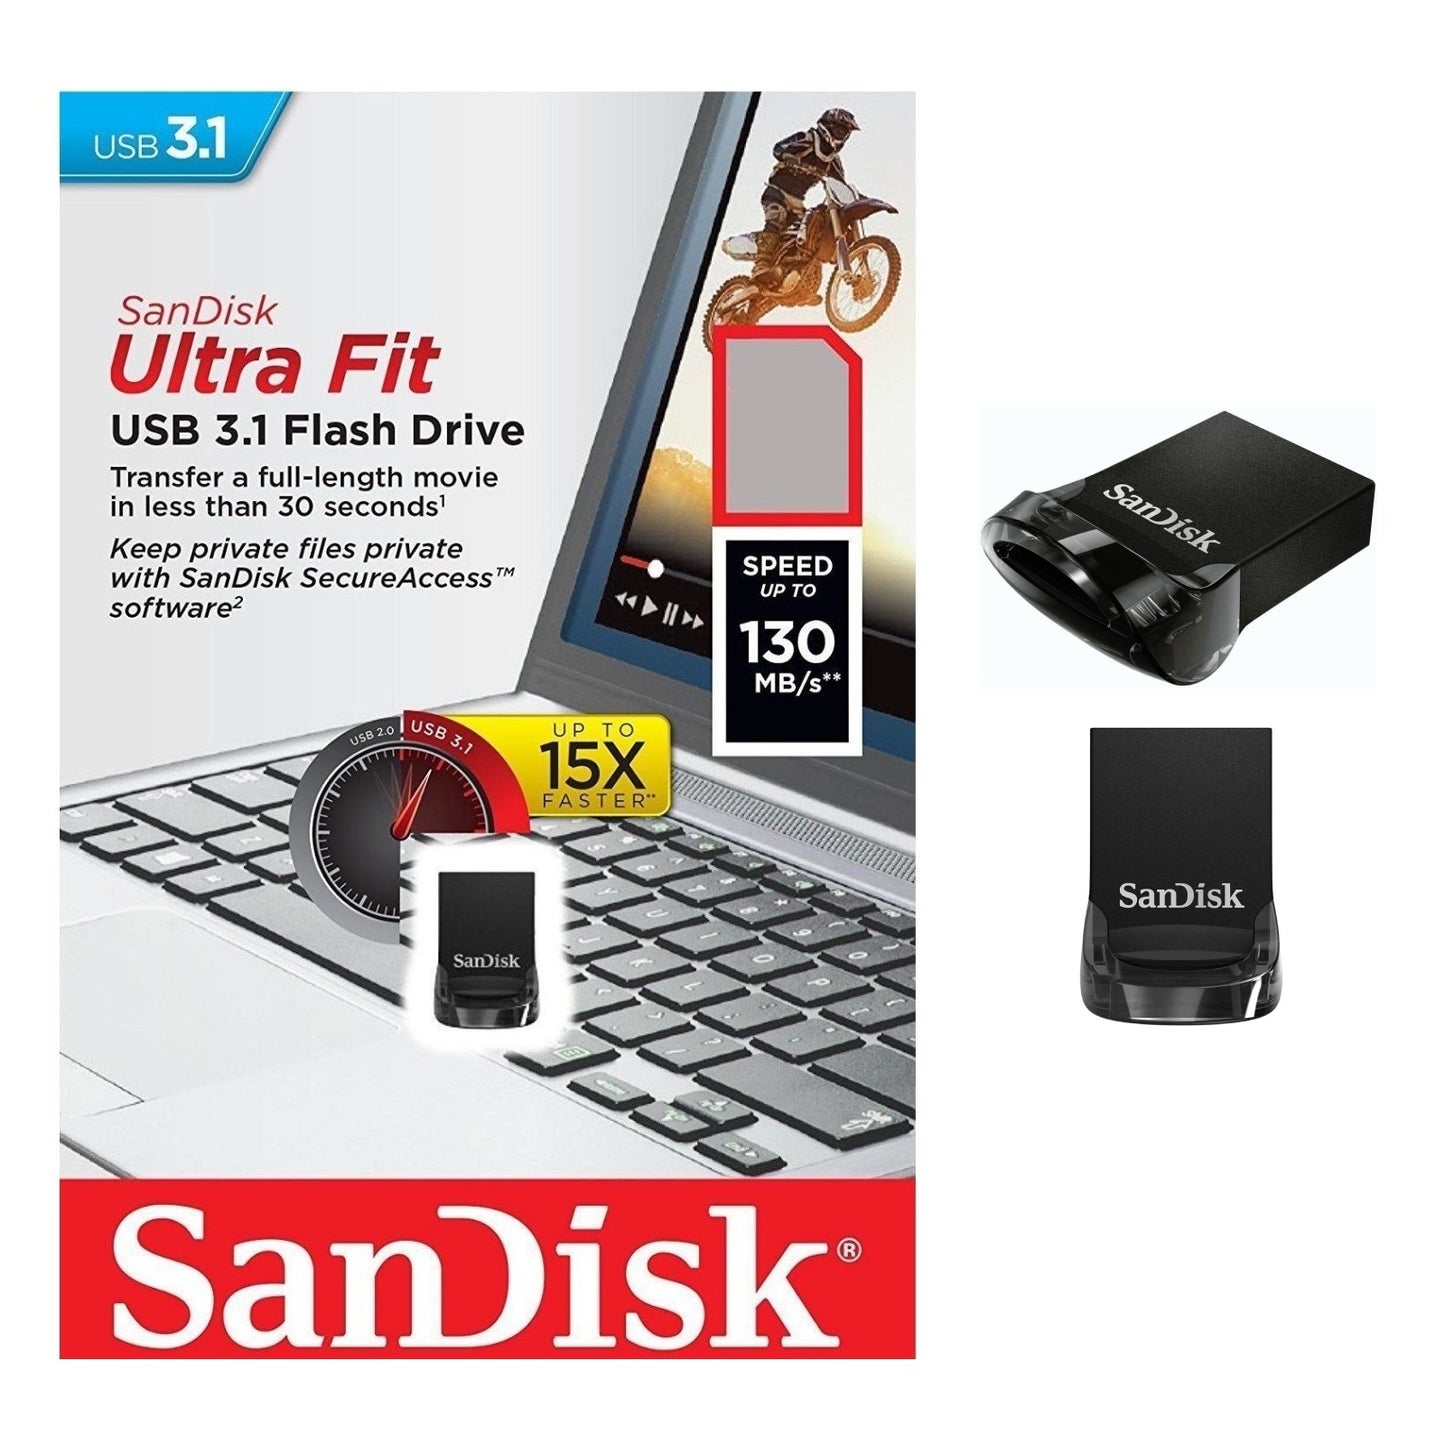 Sandisk Ultra Fit 32GB 64GB 128GB 256GB 512GB USB 3.1 Flash Drive Memory Pen